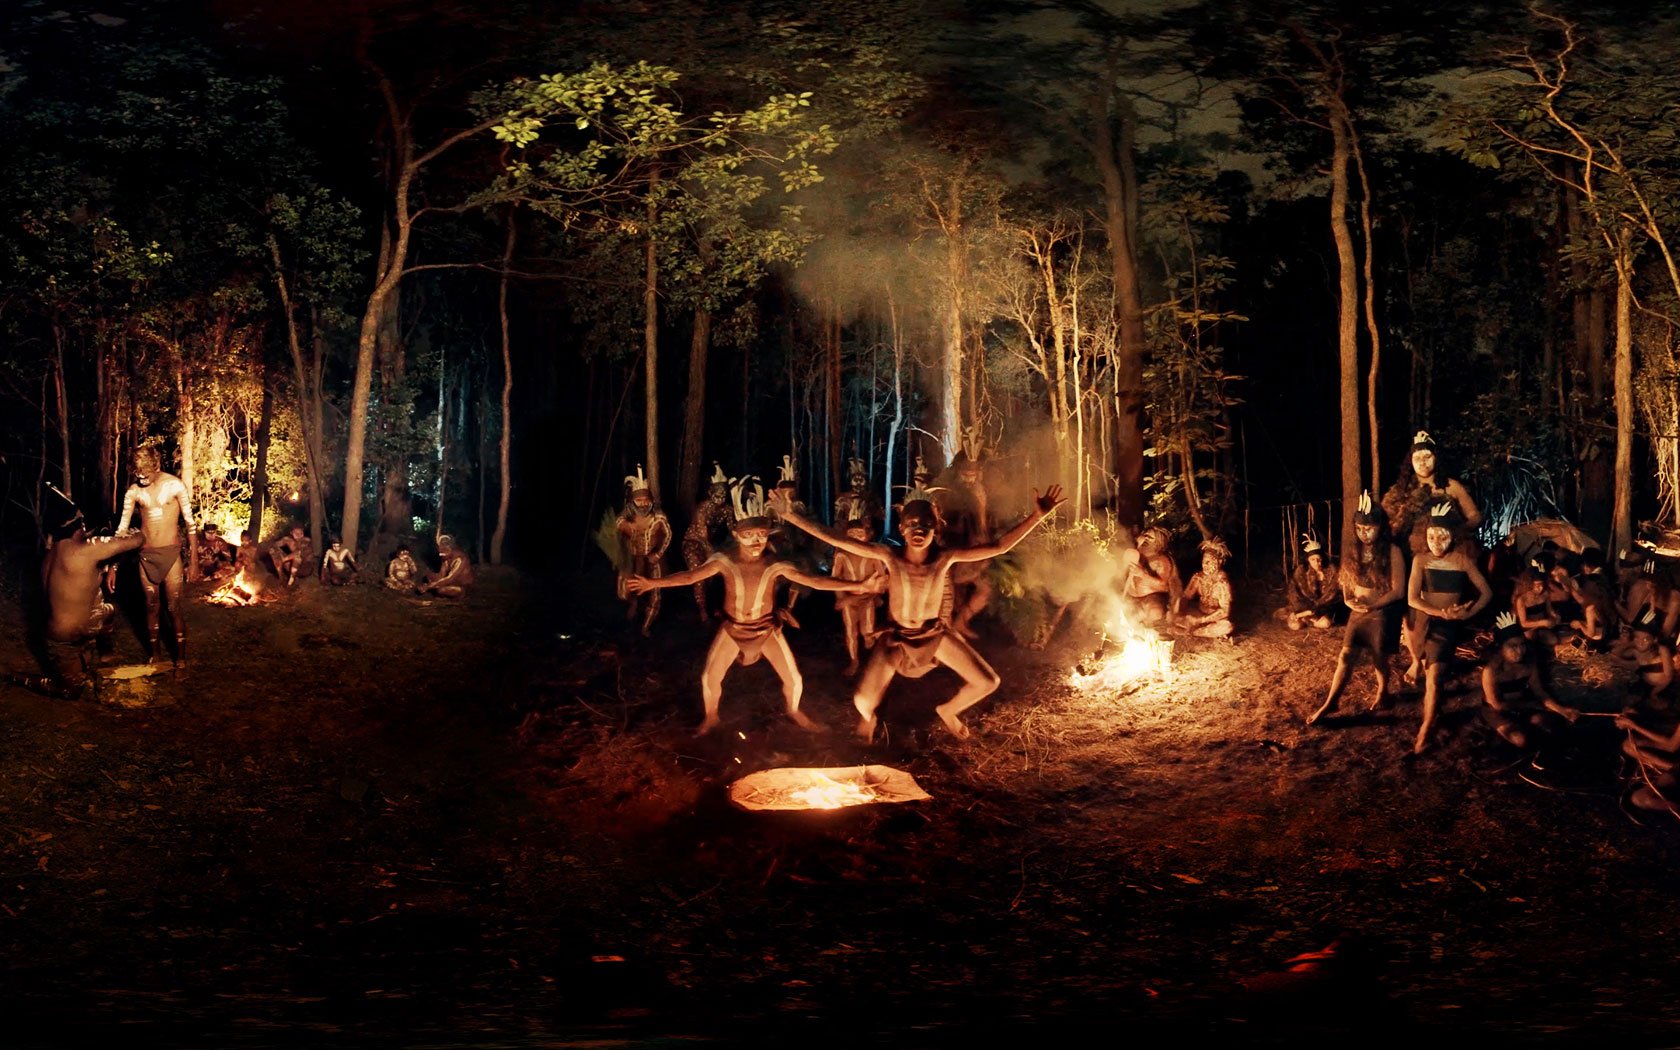 Ритуальные танцы мужчин племени. Аборигены Австралии обряд инициаций. Обряды первобытных людей. Ритуальные танцы вокруг костра. Ритуалы древних людей.